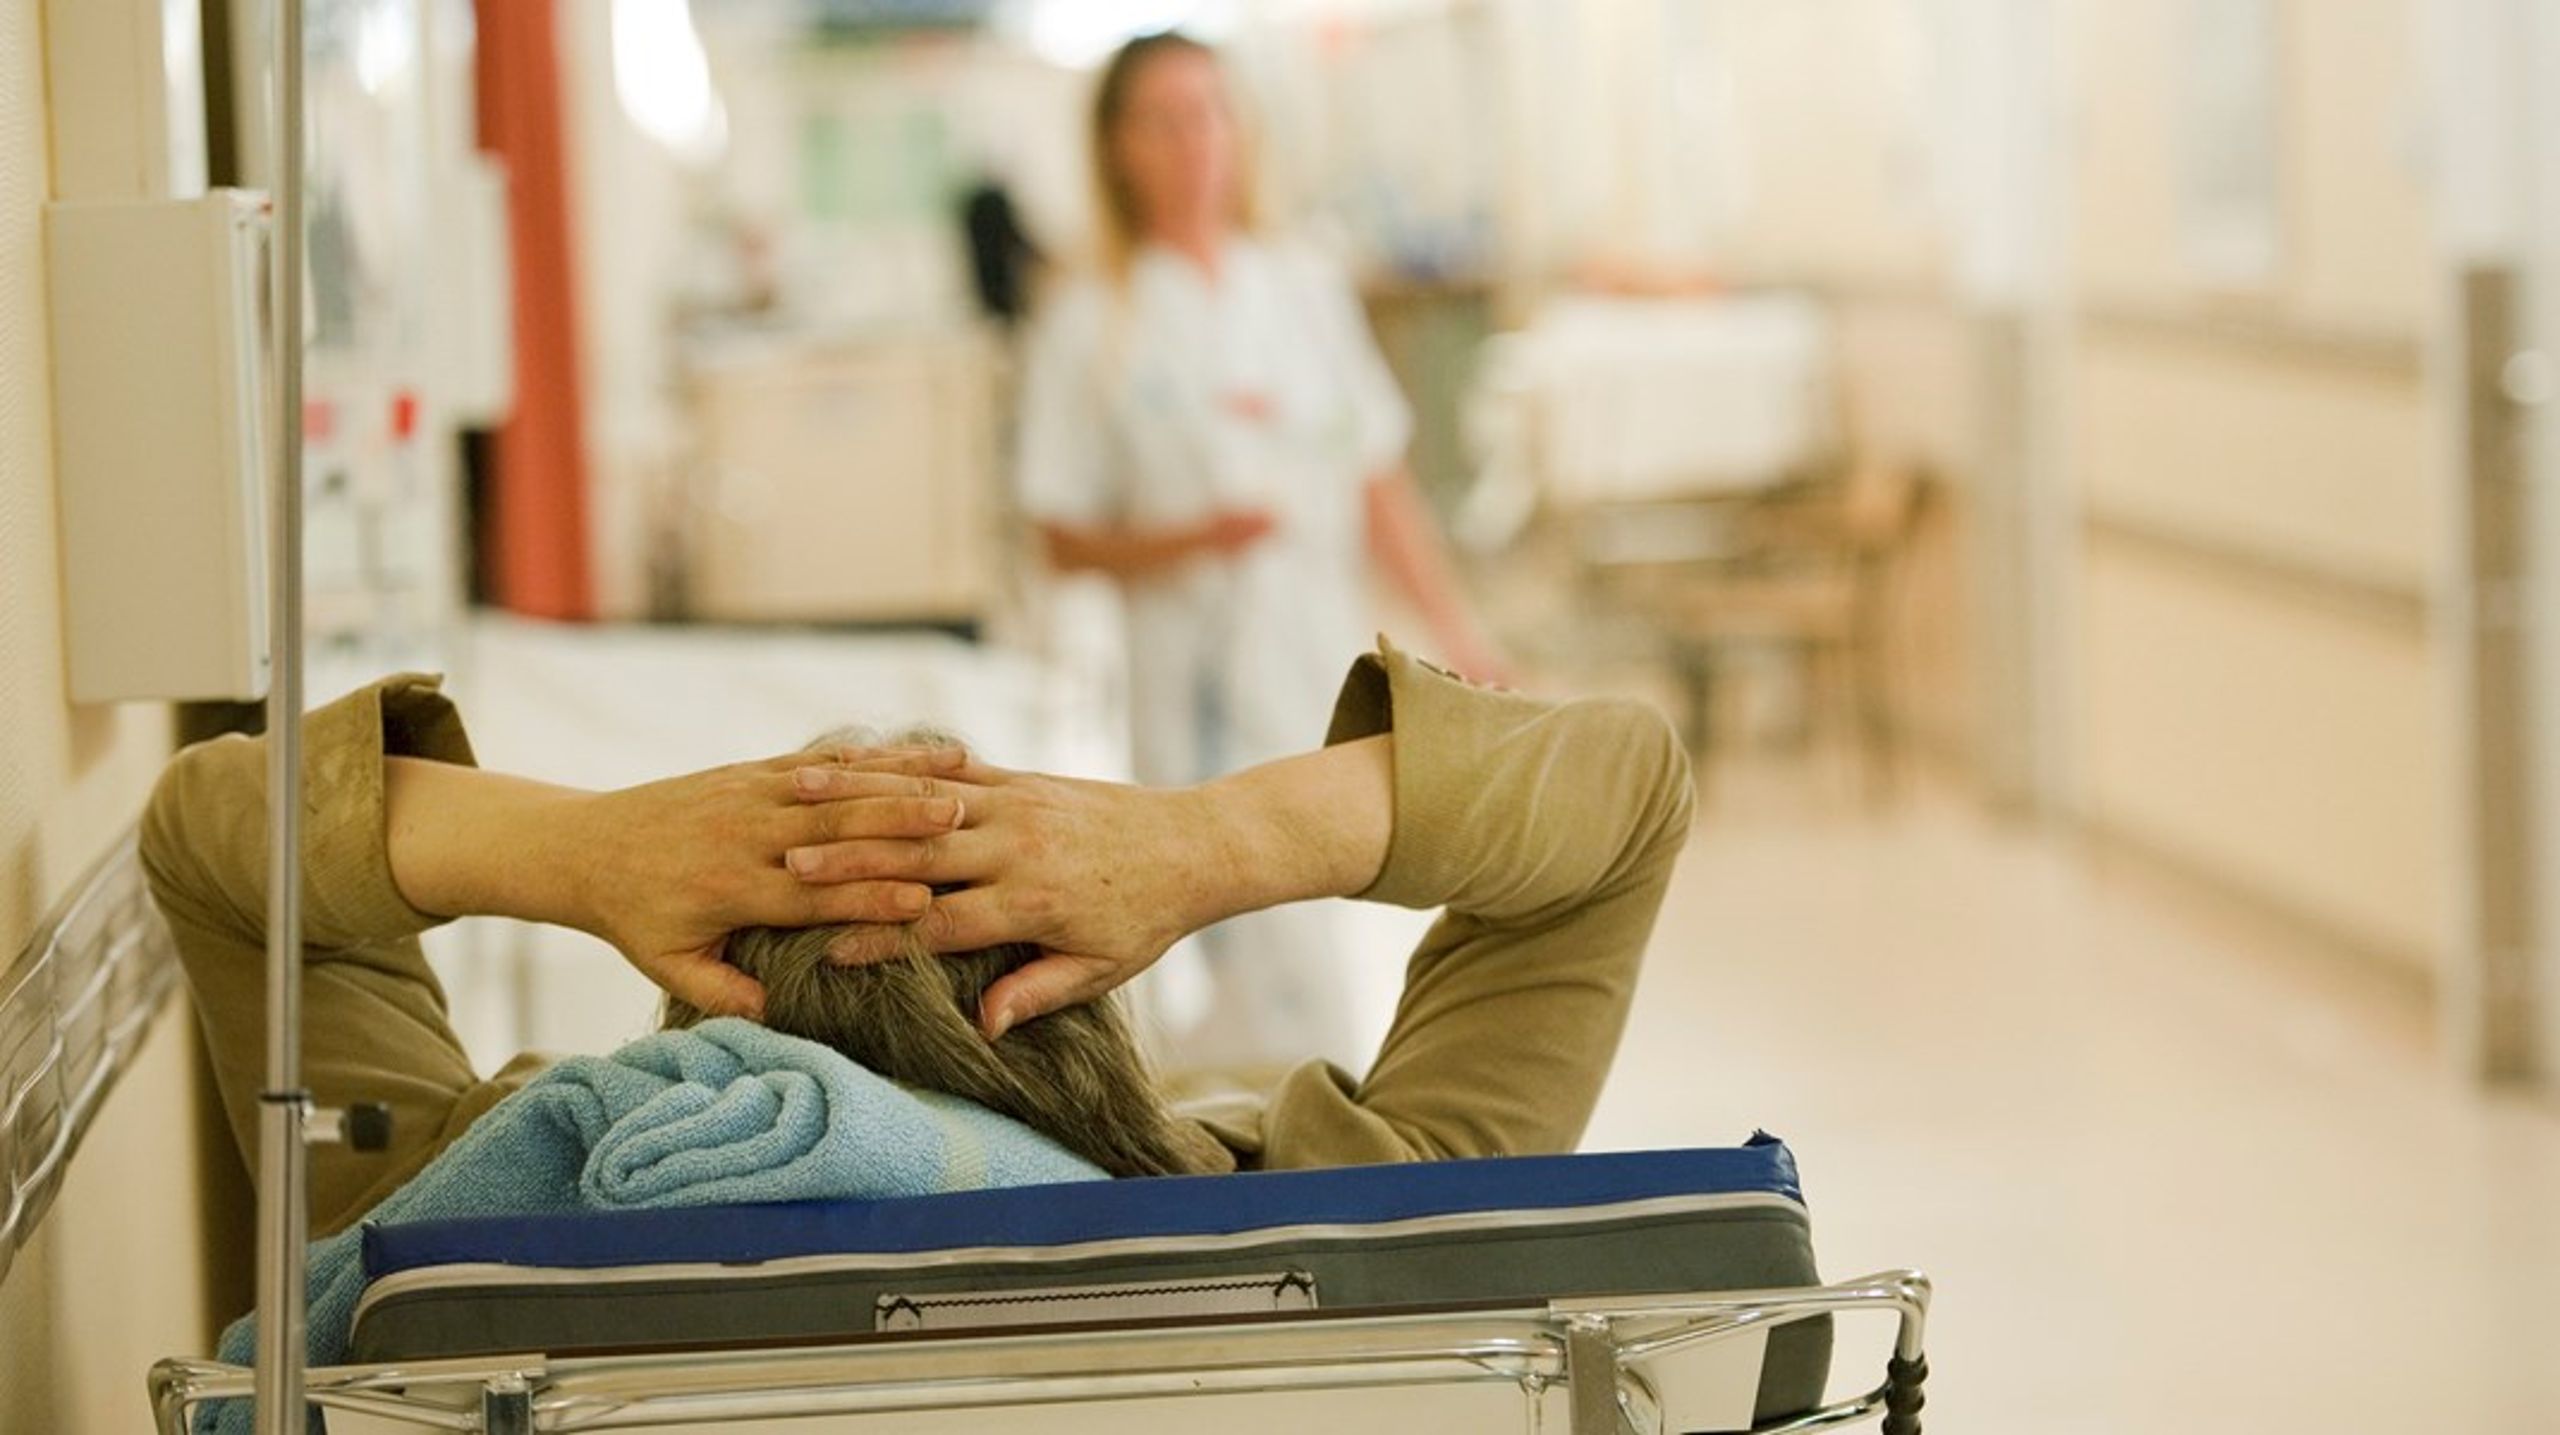 Alltför många patienter tvingas vänta på vård, skriver debattören.